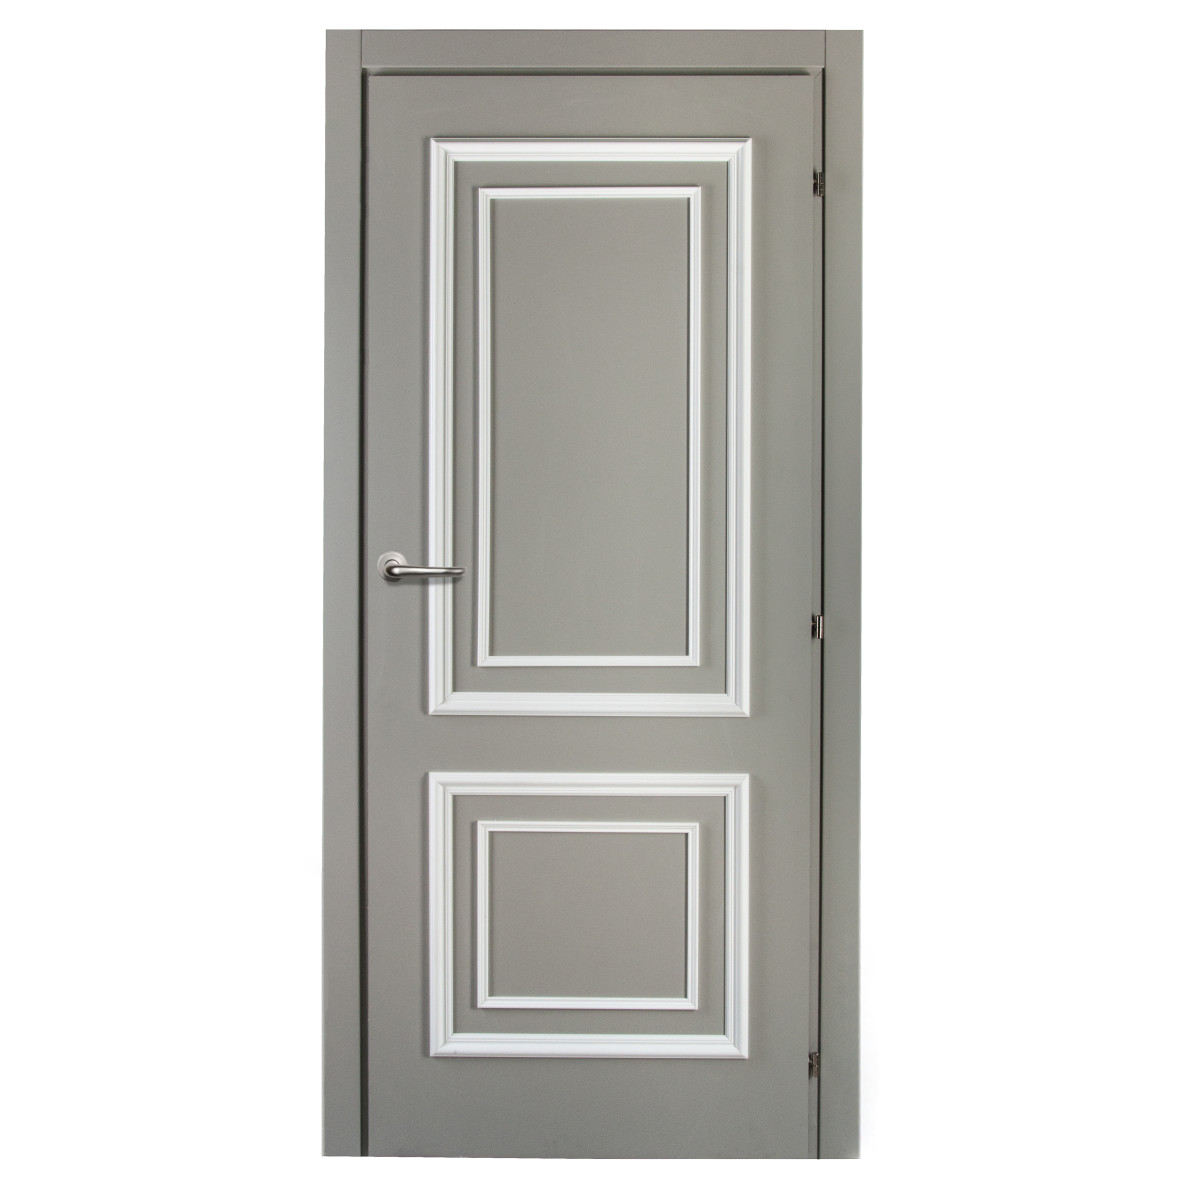 Дверь межкомнатная Треви 70х200 см, цвет серый, с фурнитурой